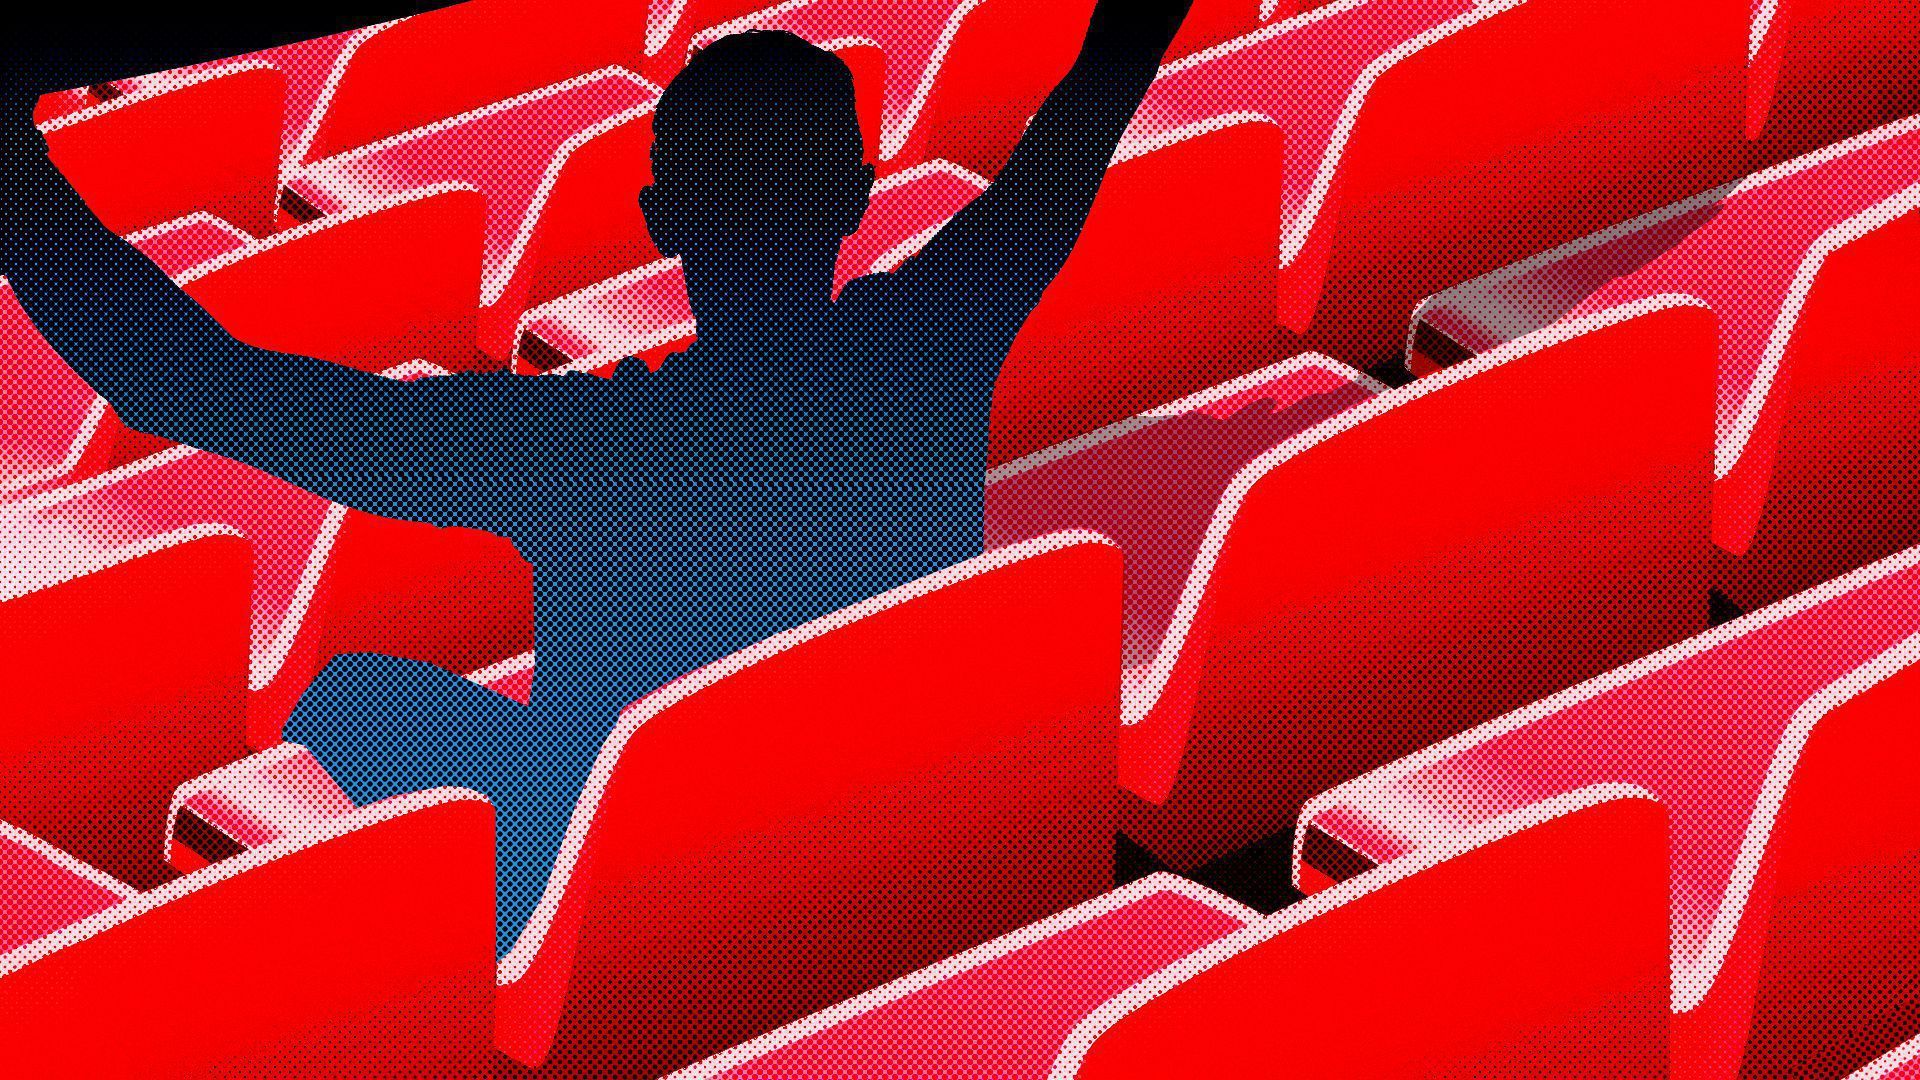 Shadow fan in stadium